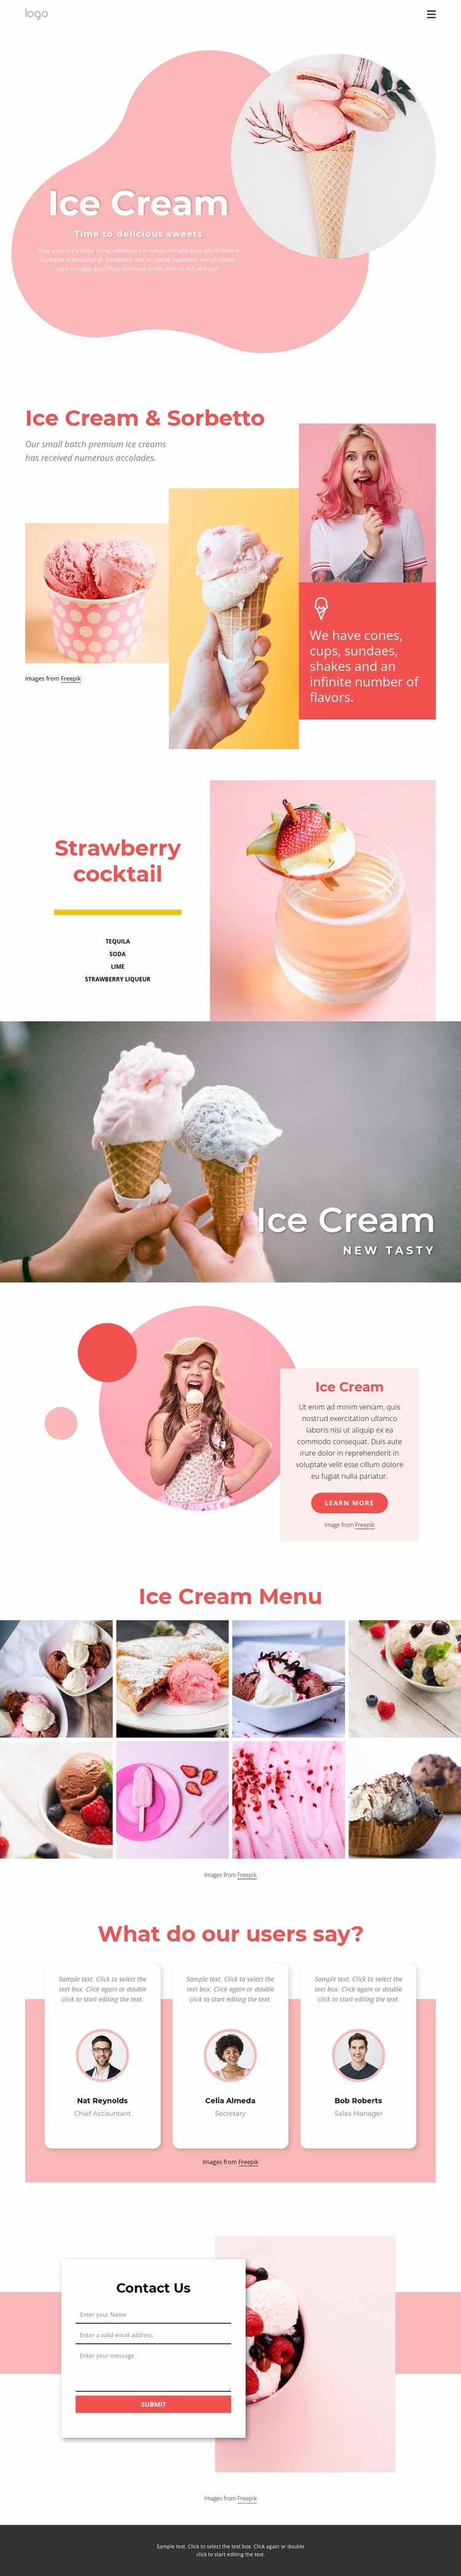 Ice cream and Ffrozen yogurt Web Page Design